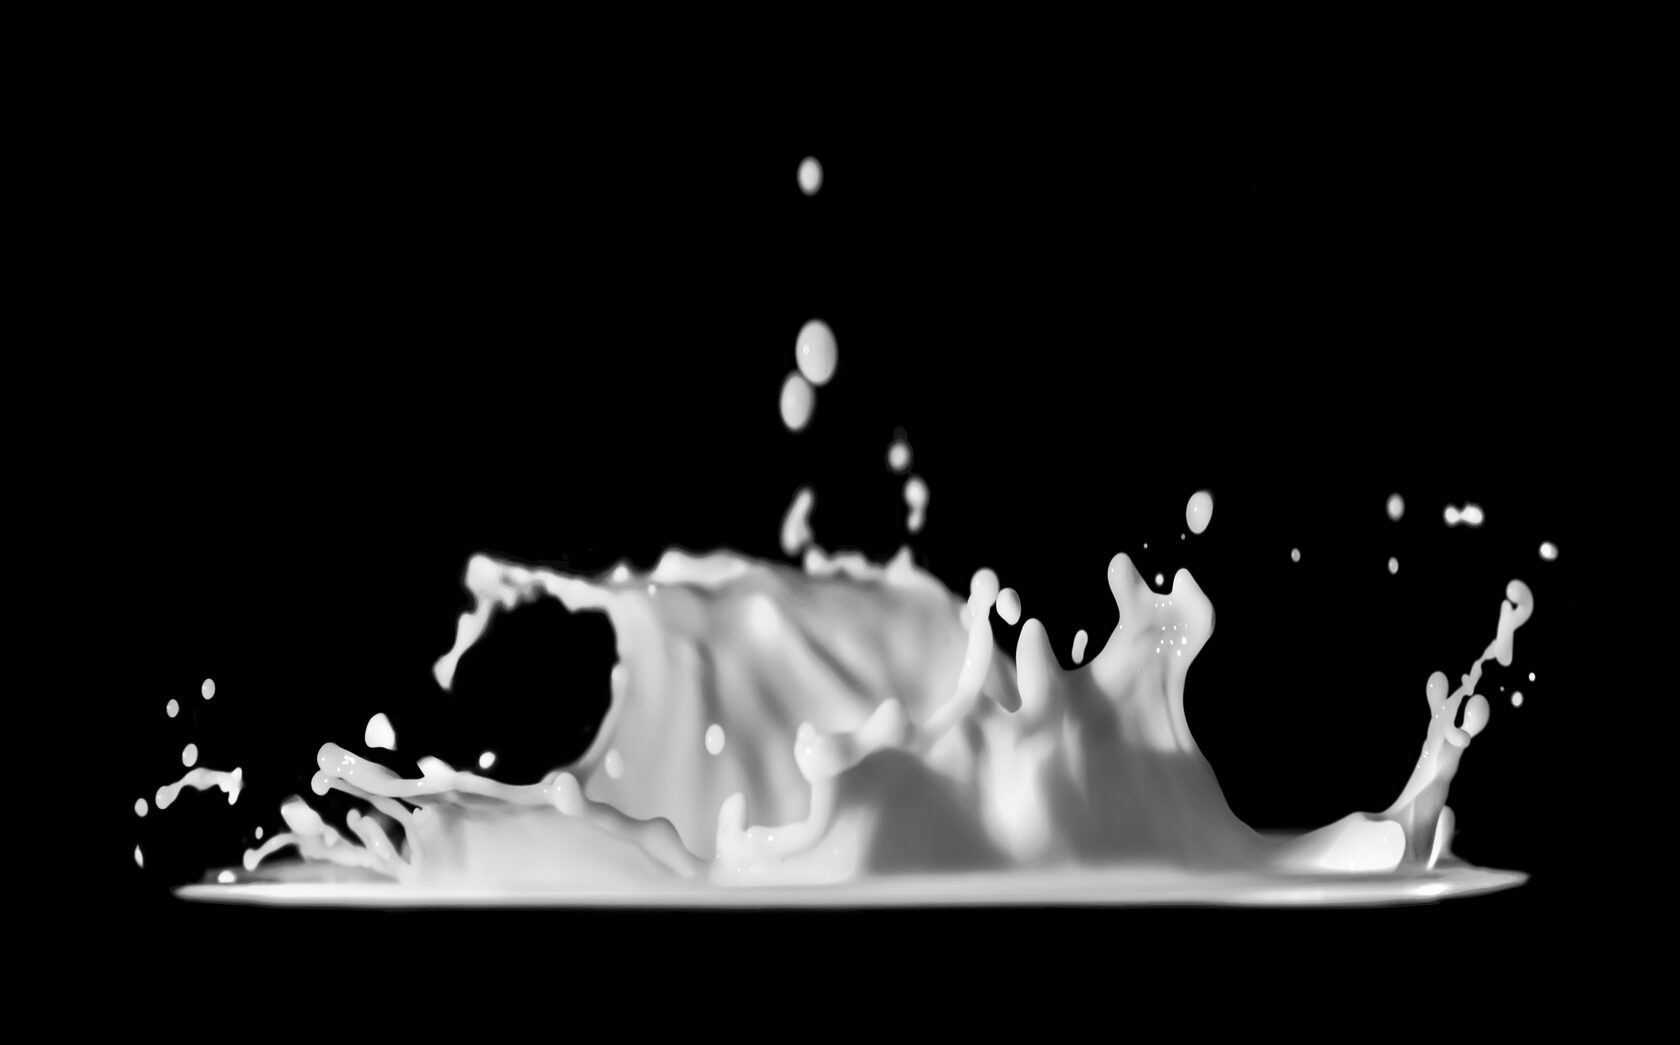 АМИ ВЕТРА - маркетинговое исследование рынка молока и сливок